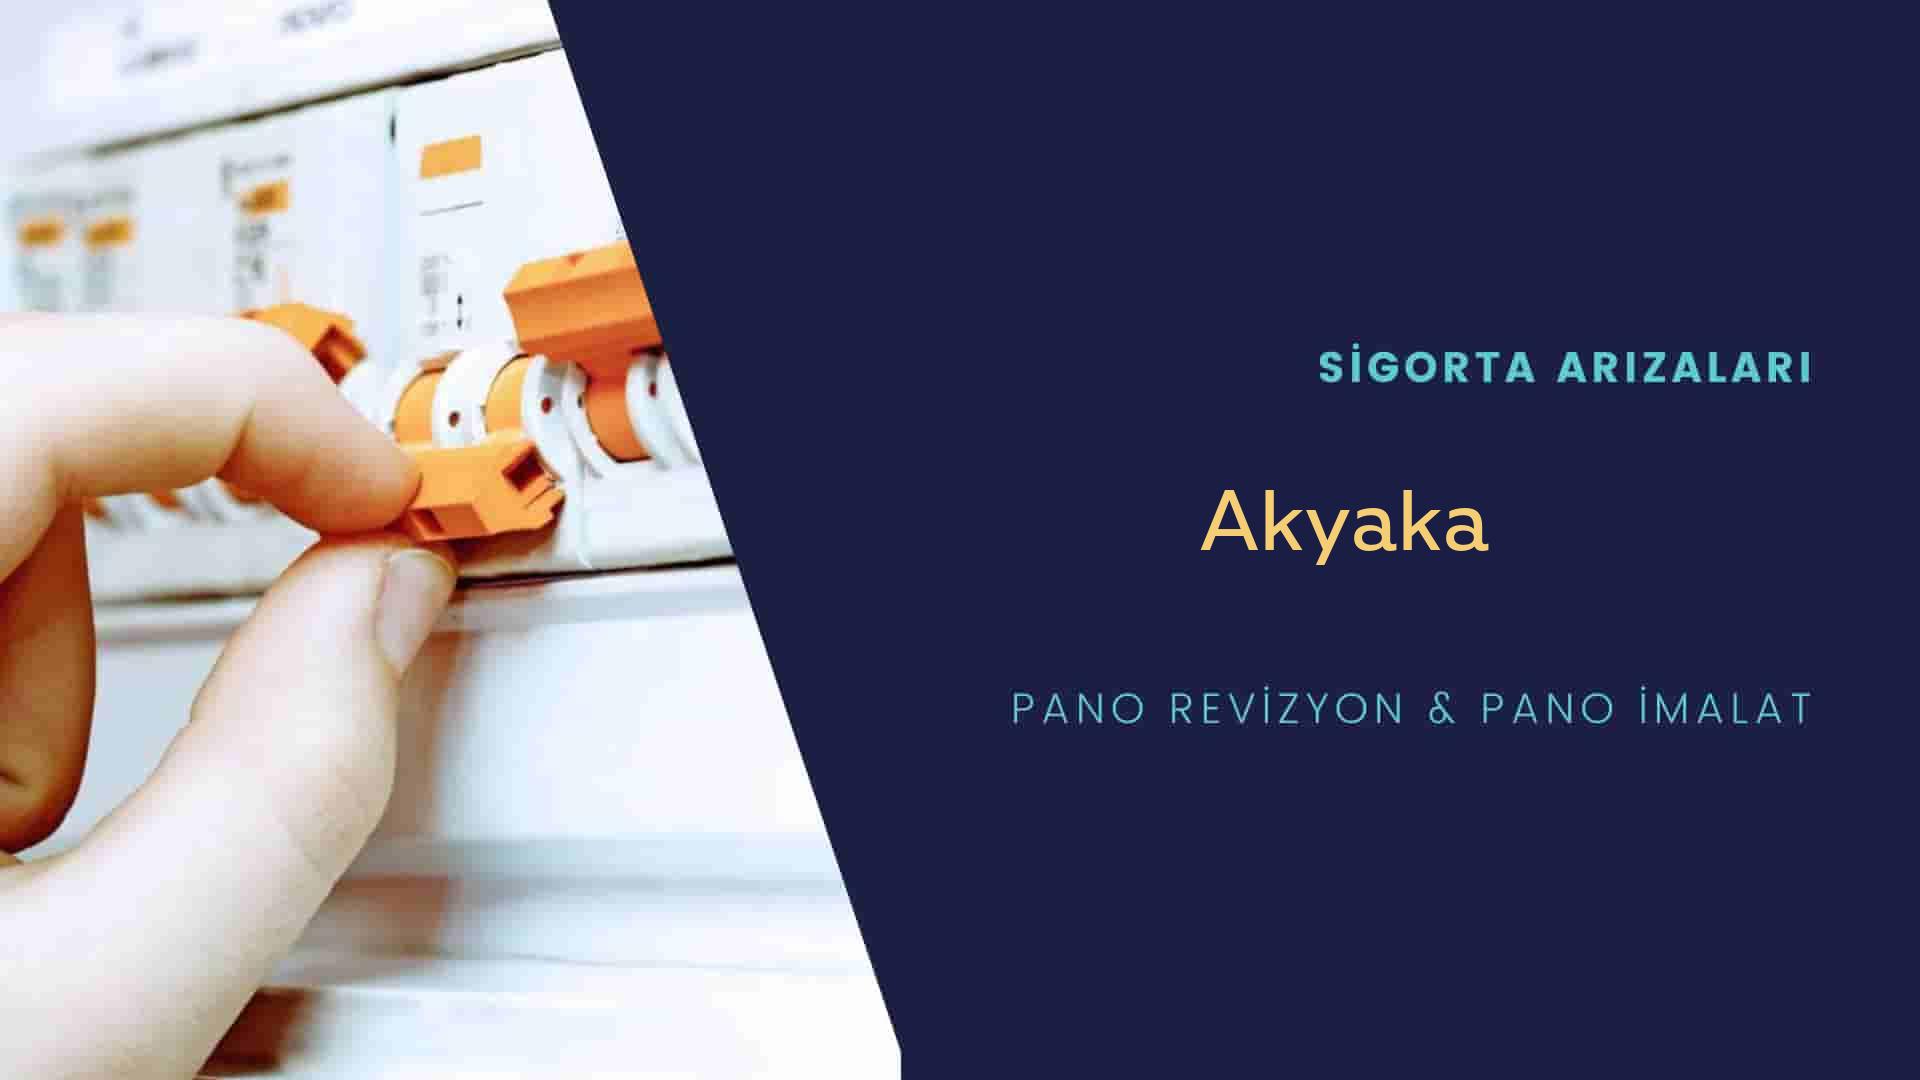 Akyaka Sigorta Arızaları İçin Profesyonel Elektrikçi ustalarımızı dilediğiniz zaman arayabilir talepte bulunabilirsiniz.